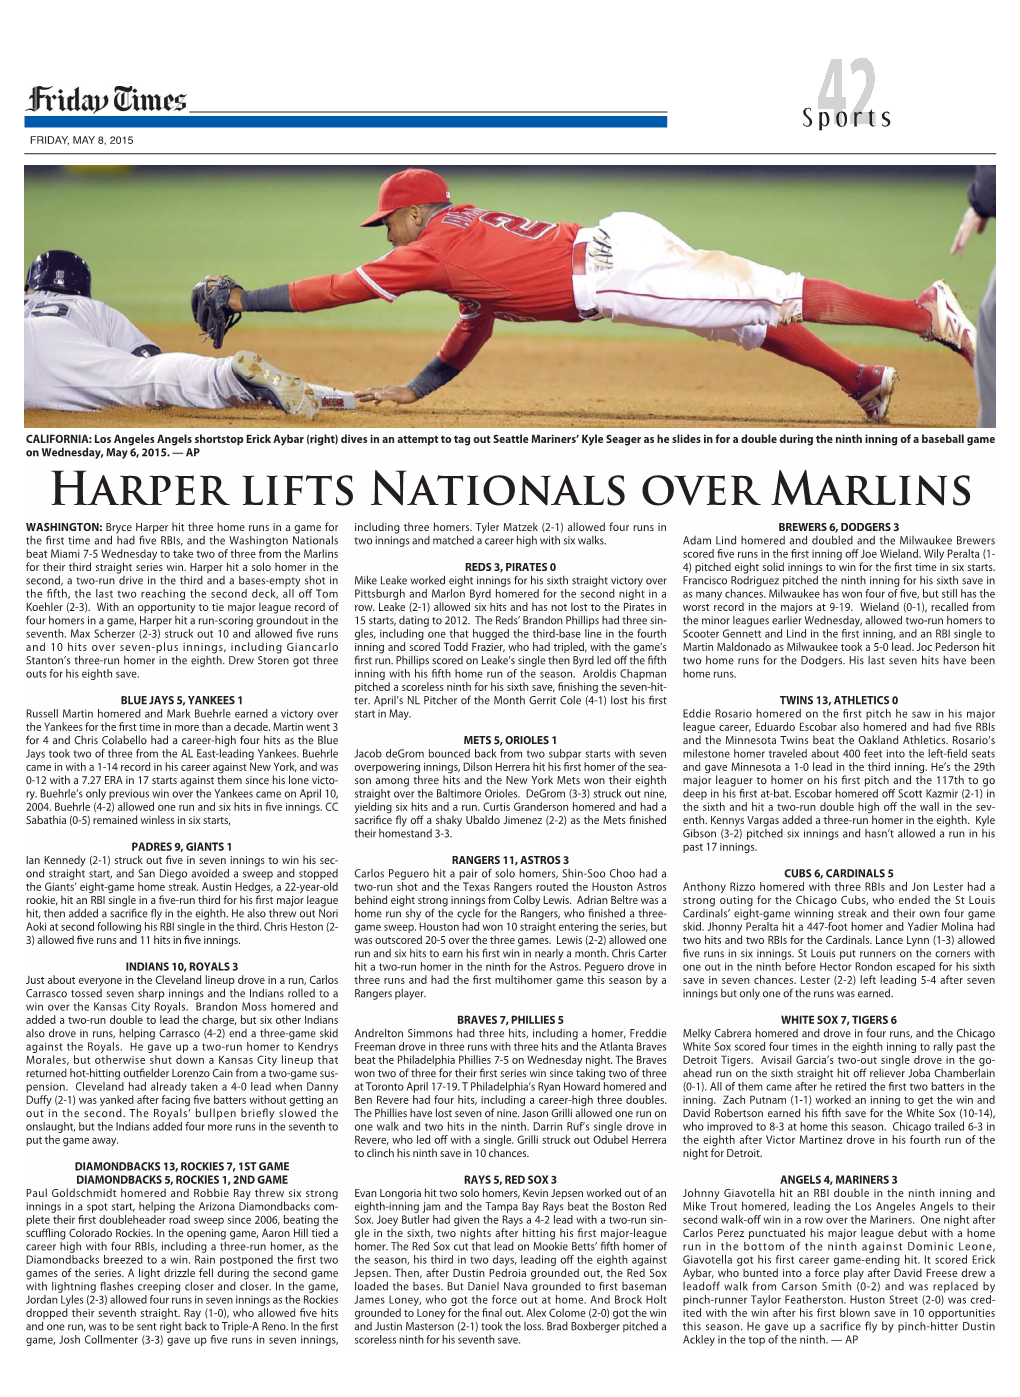 Harper Lifts Nationals Over Marlins